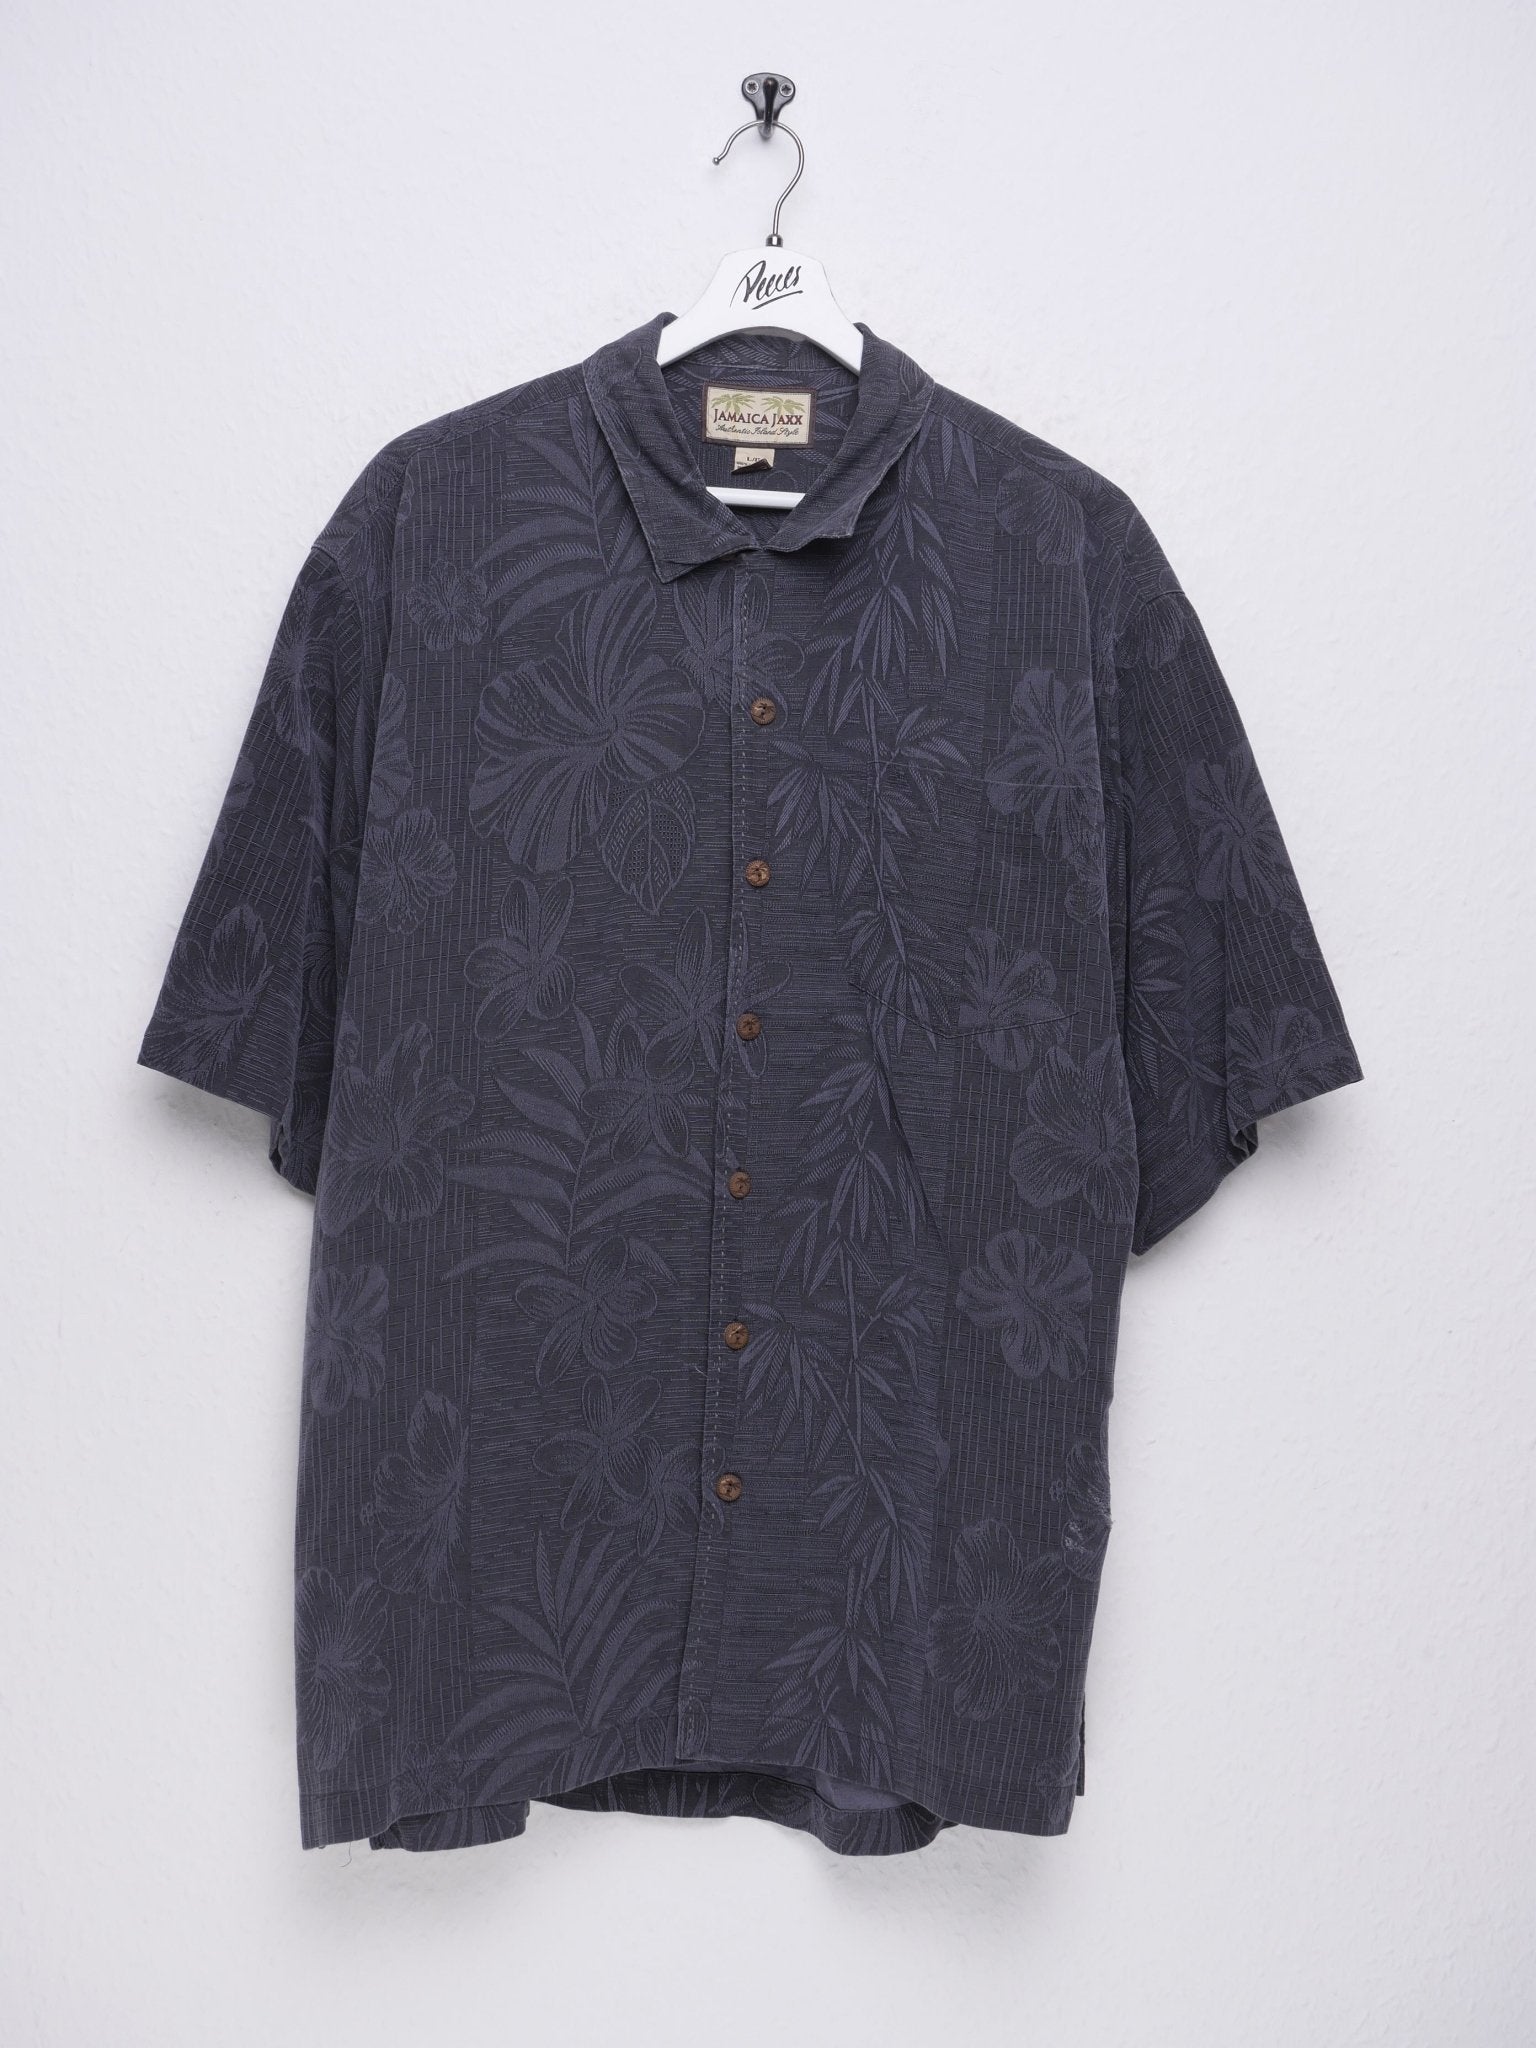 Vintage Hawaii patterned Kurzarm Hemd - Peeces